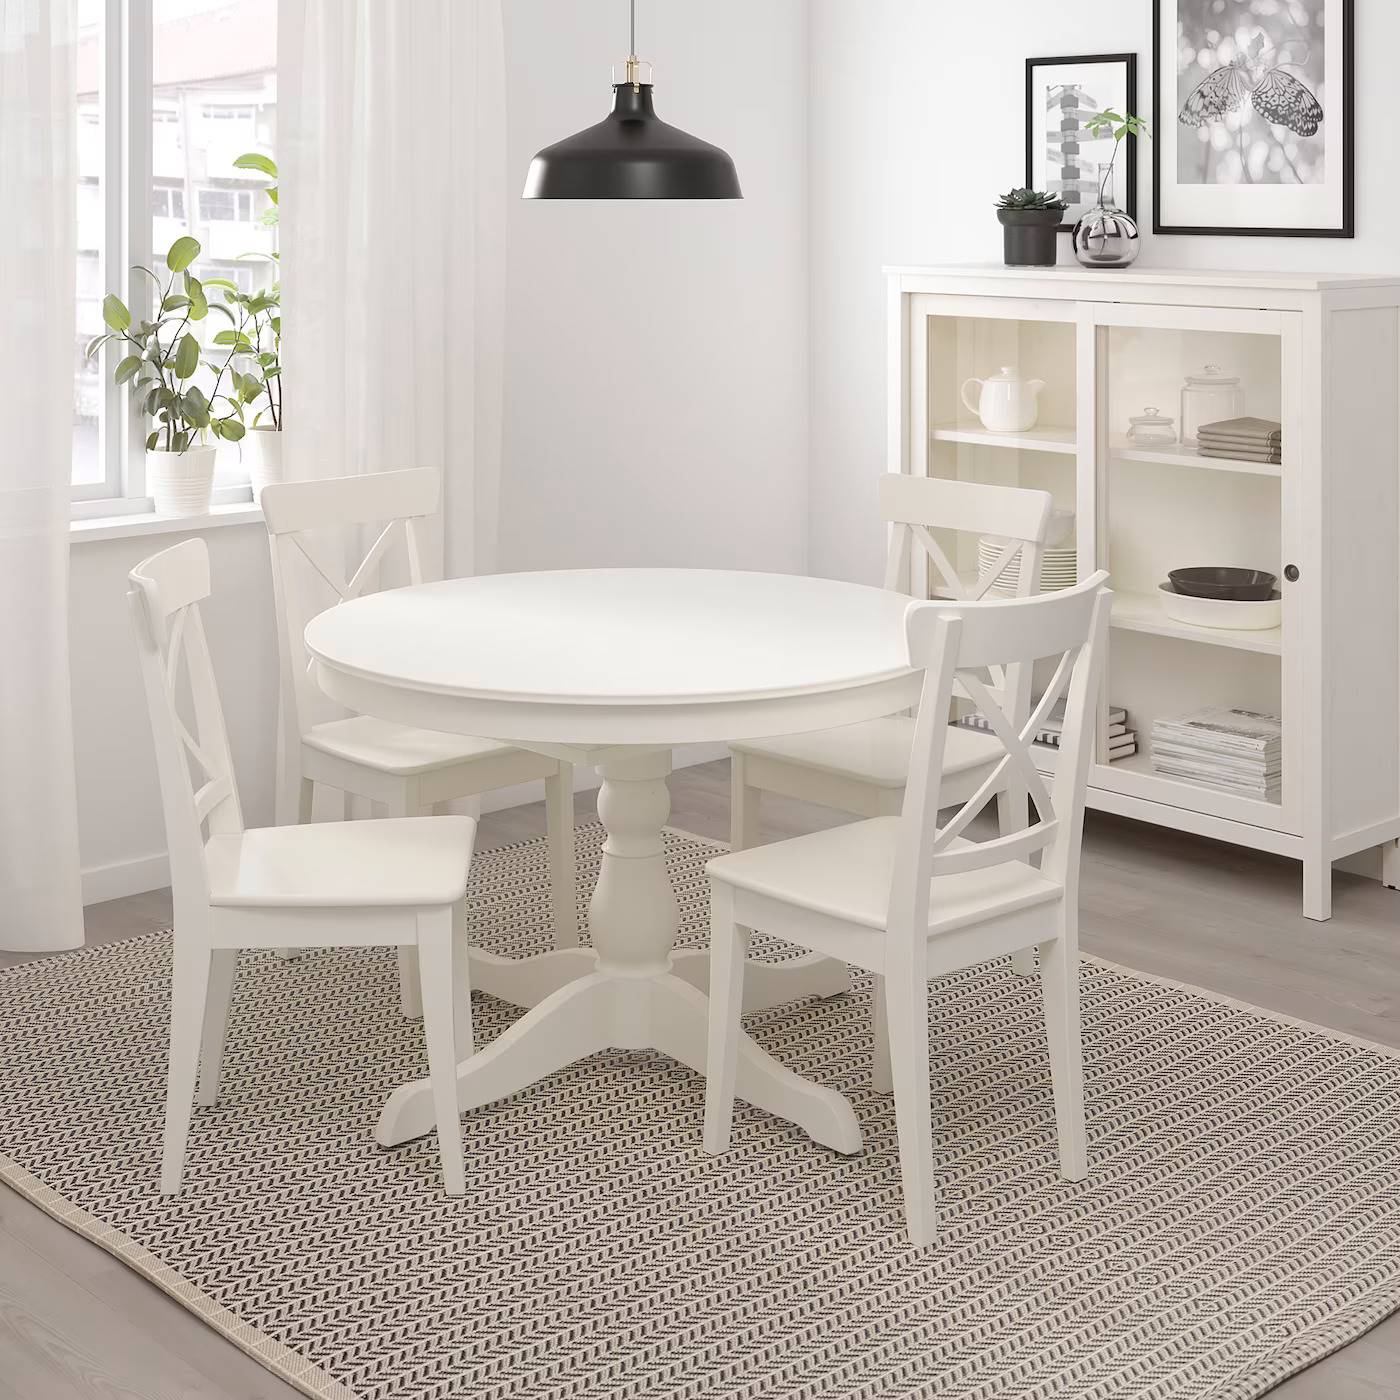 Mesa de cocina extensible redonda INGATORP de IKEA